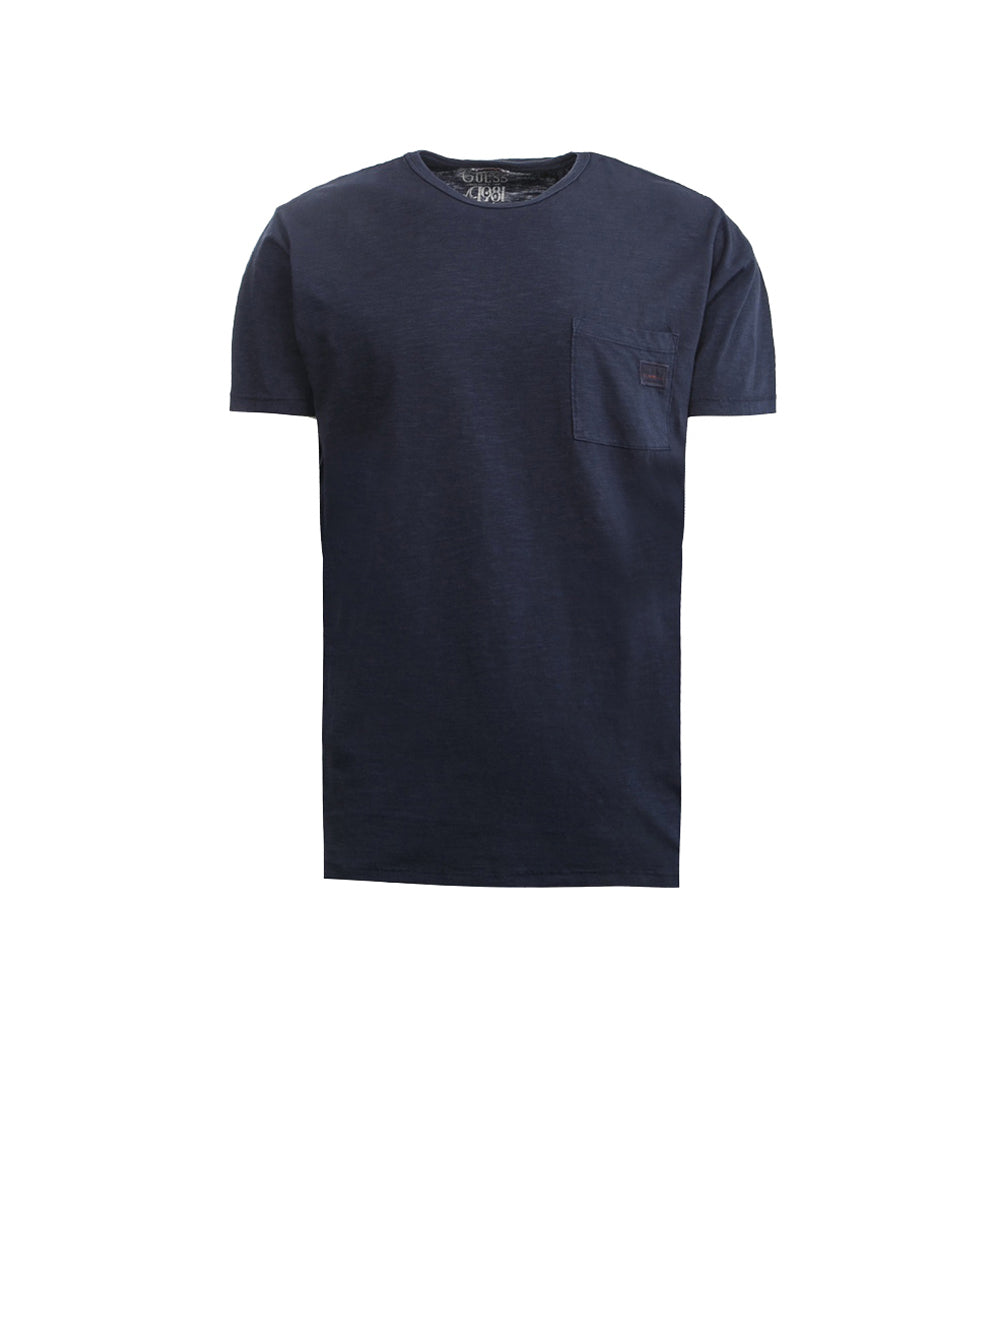 T-shirt Uomo a maniche corte blu con tasca frontale